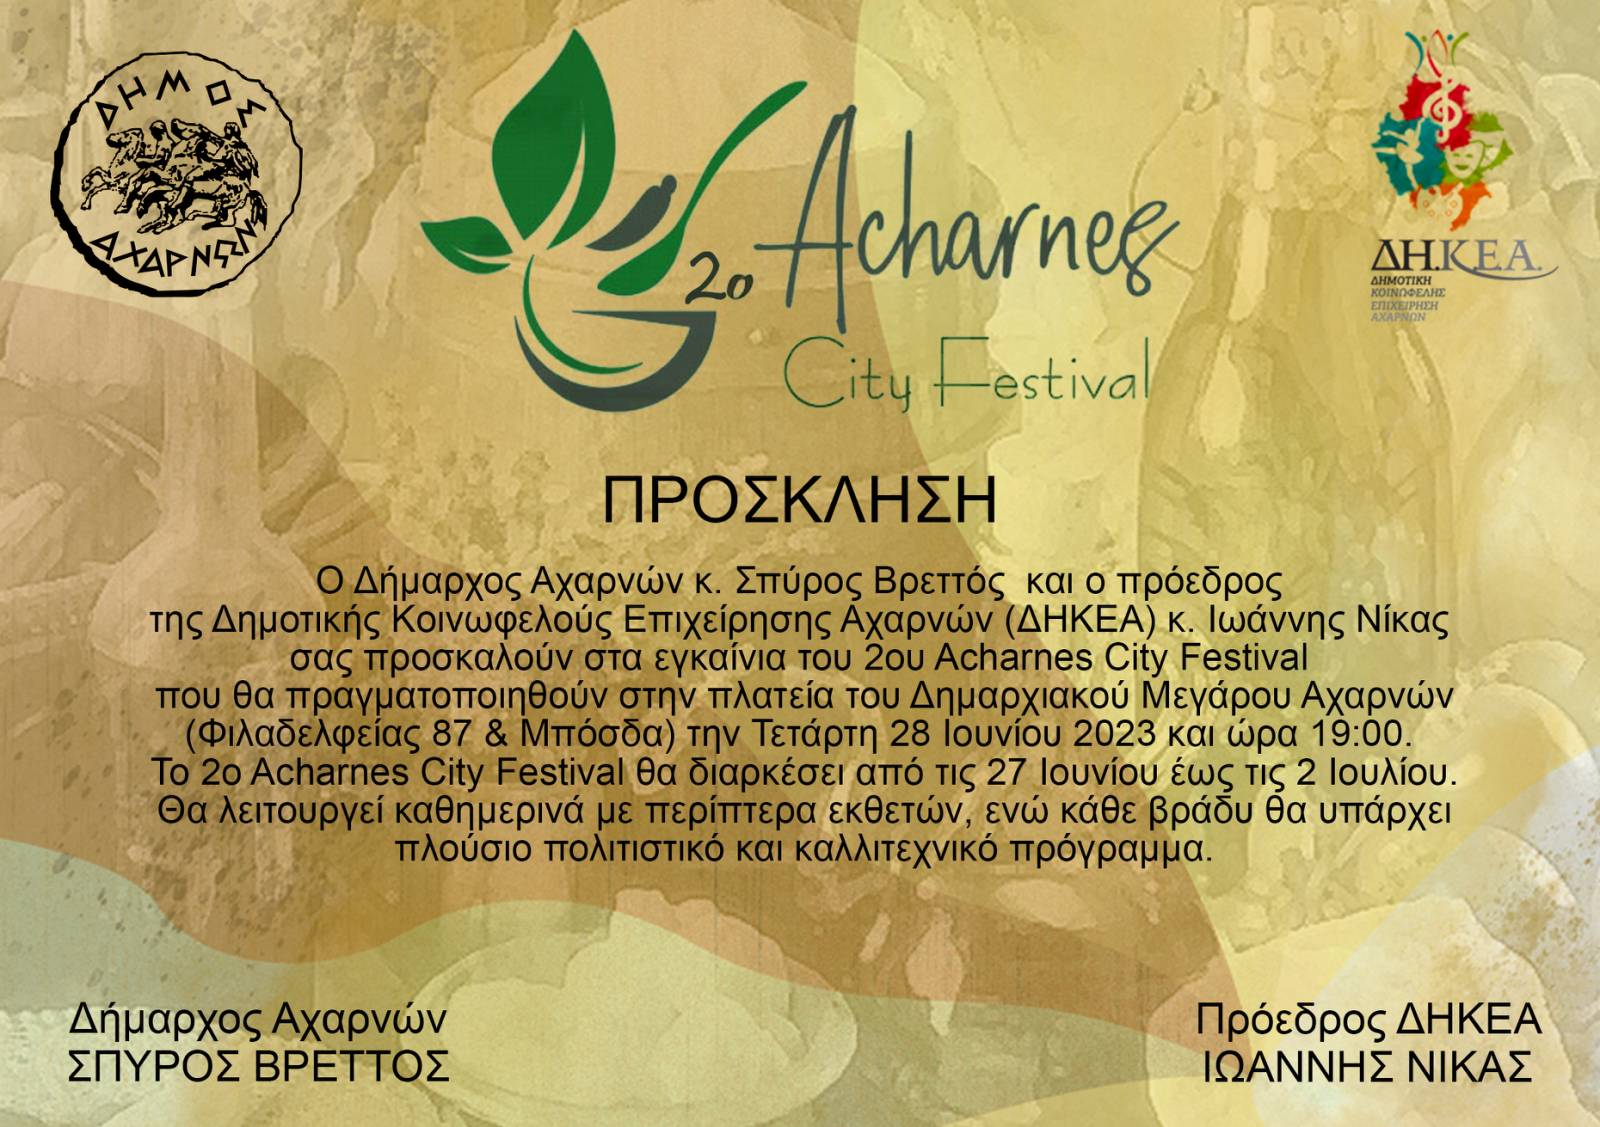 Προ των πυλών το 2ο Acharnes City Festival. Ξεκινά στις 27 Ιουνίου και ολοκληρώνεται στις 2 Ιουλίου